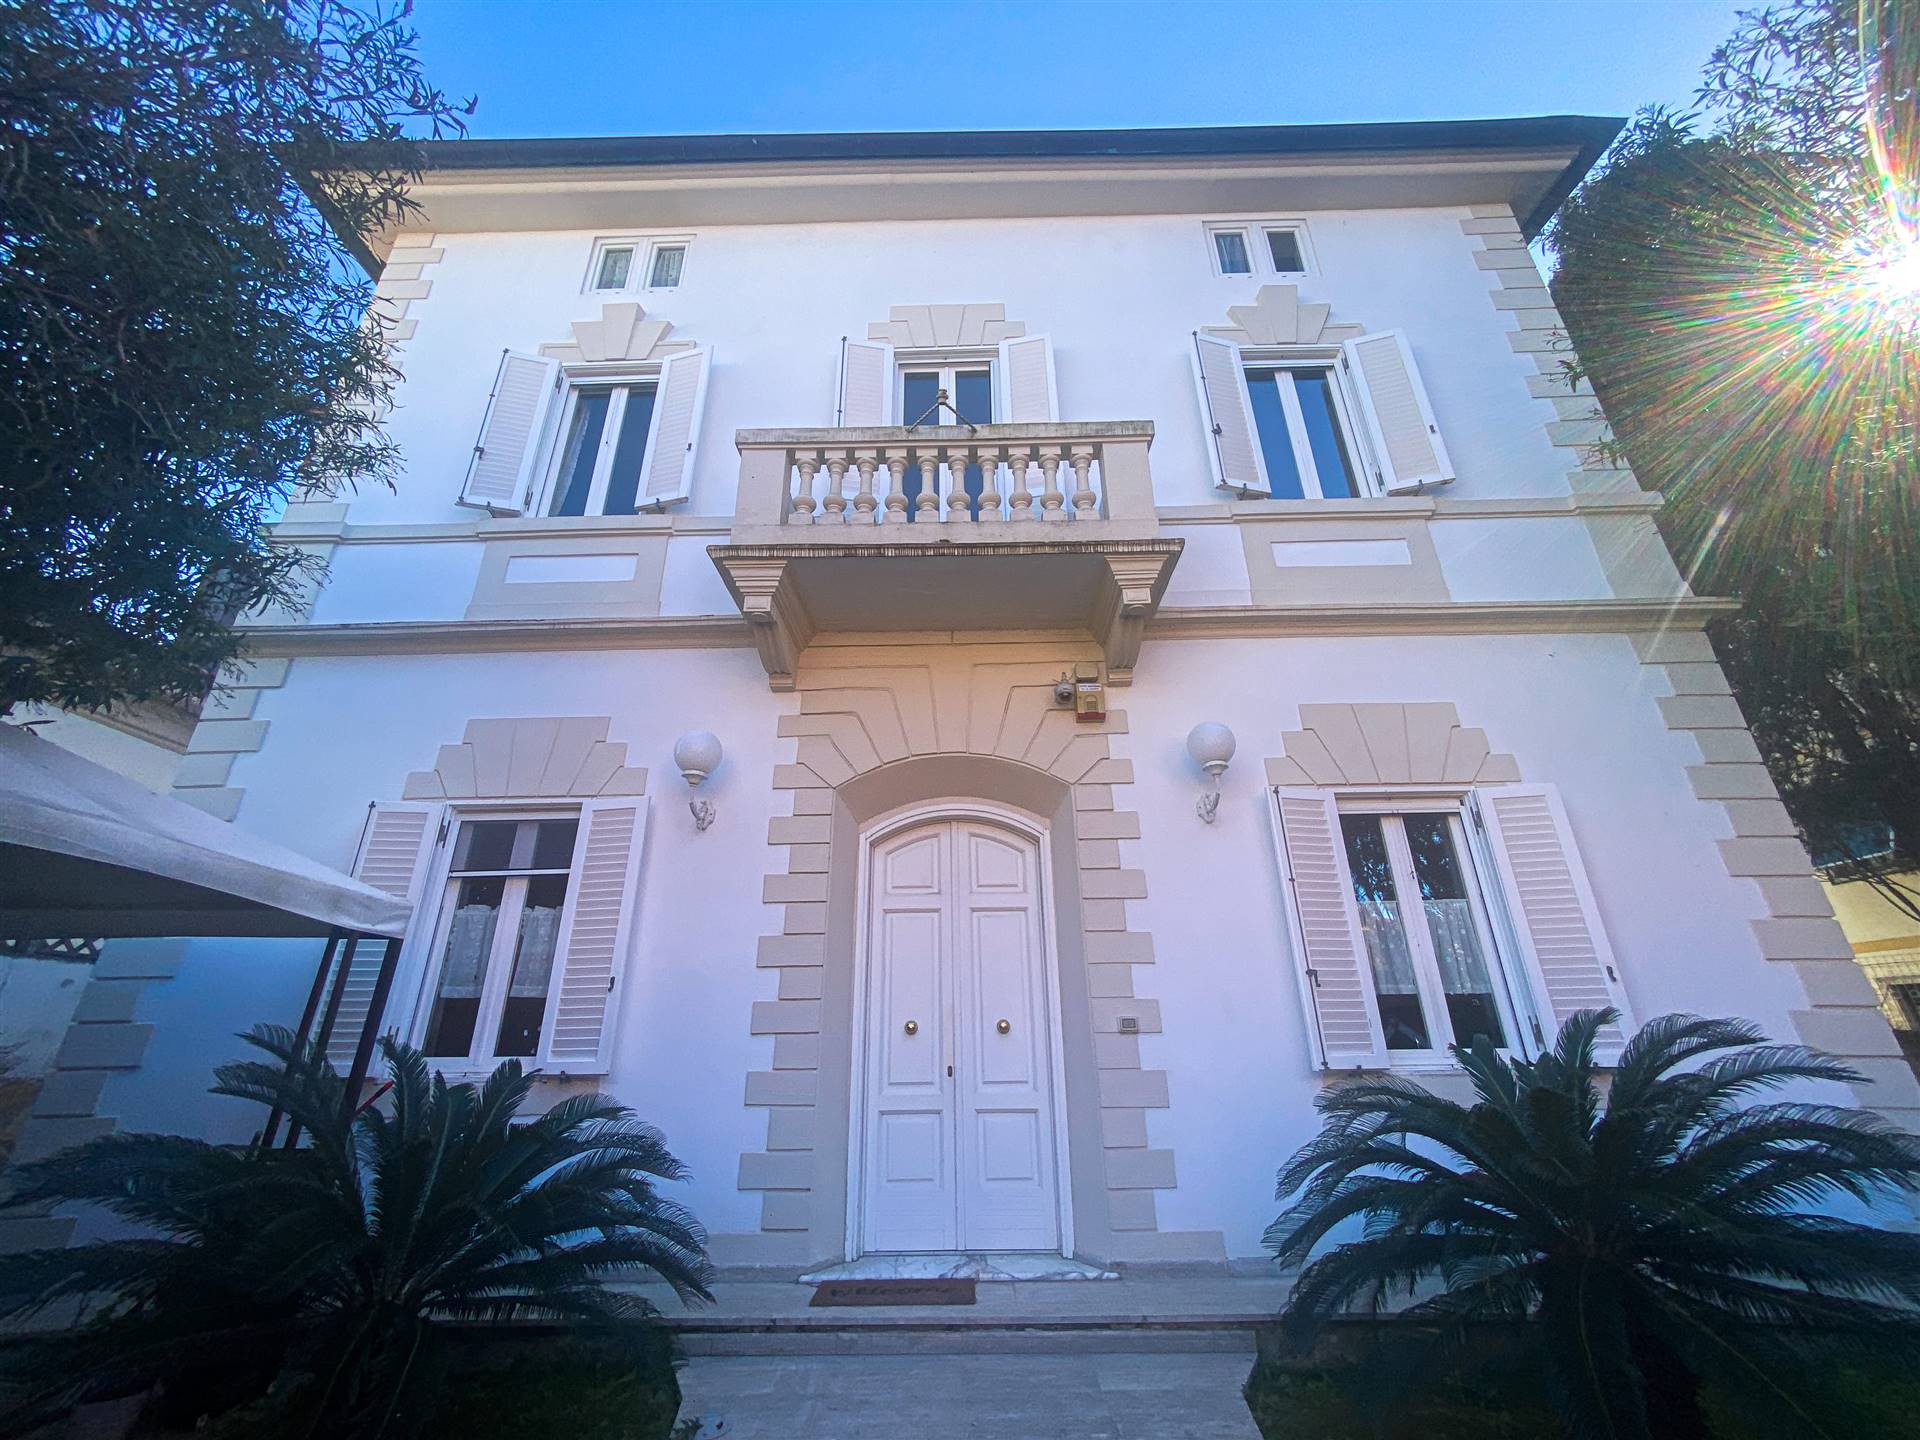 Villa in ottime condizioni in zona Antignano a Livorno